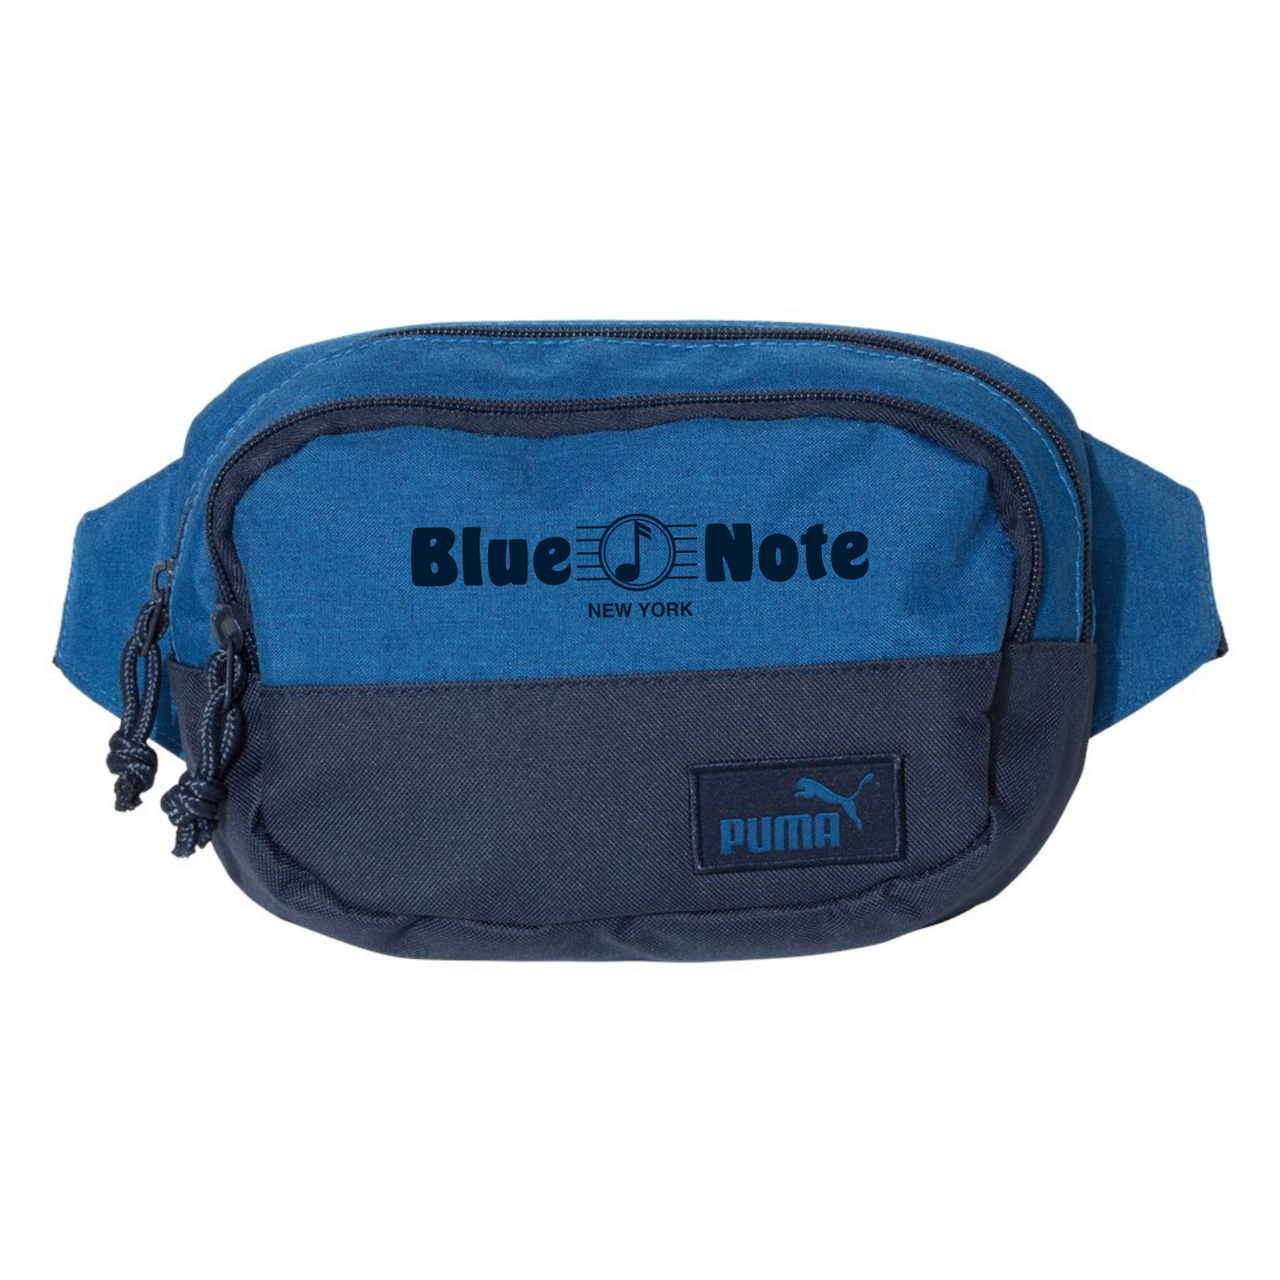 Blue Note Crossbody Puma Bag